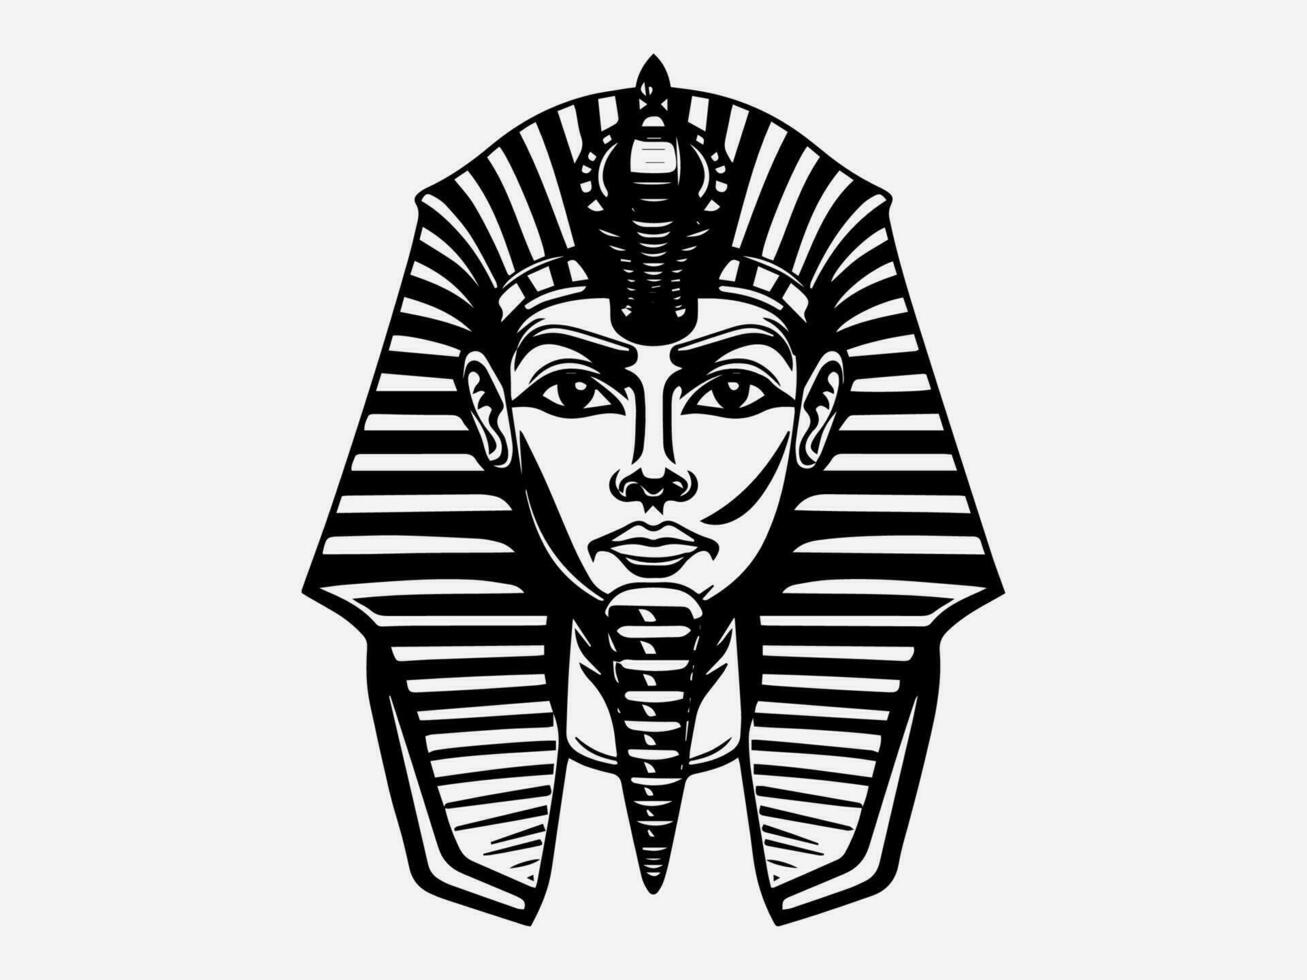 regale e travolgente Faraone mano disegnato logo design illustrazione, evocando antico egiziano mistica e autorità vettore